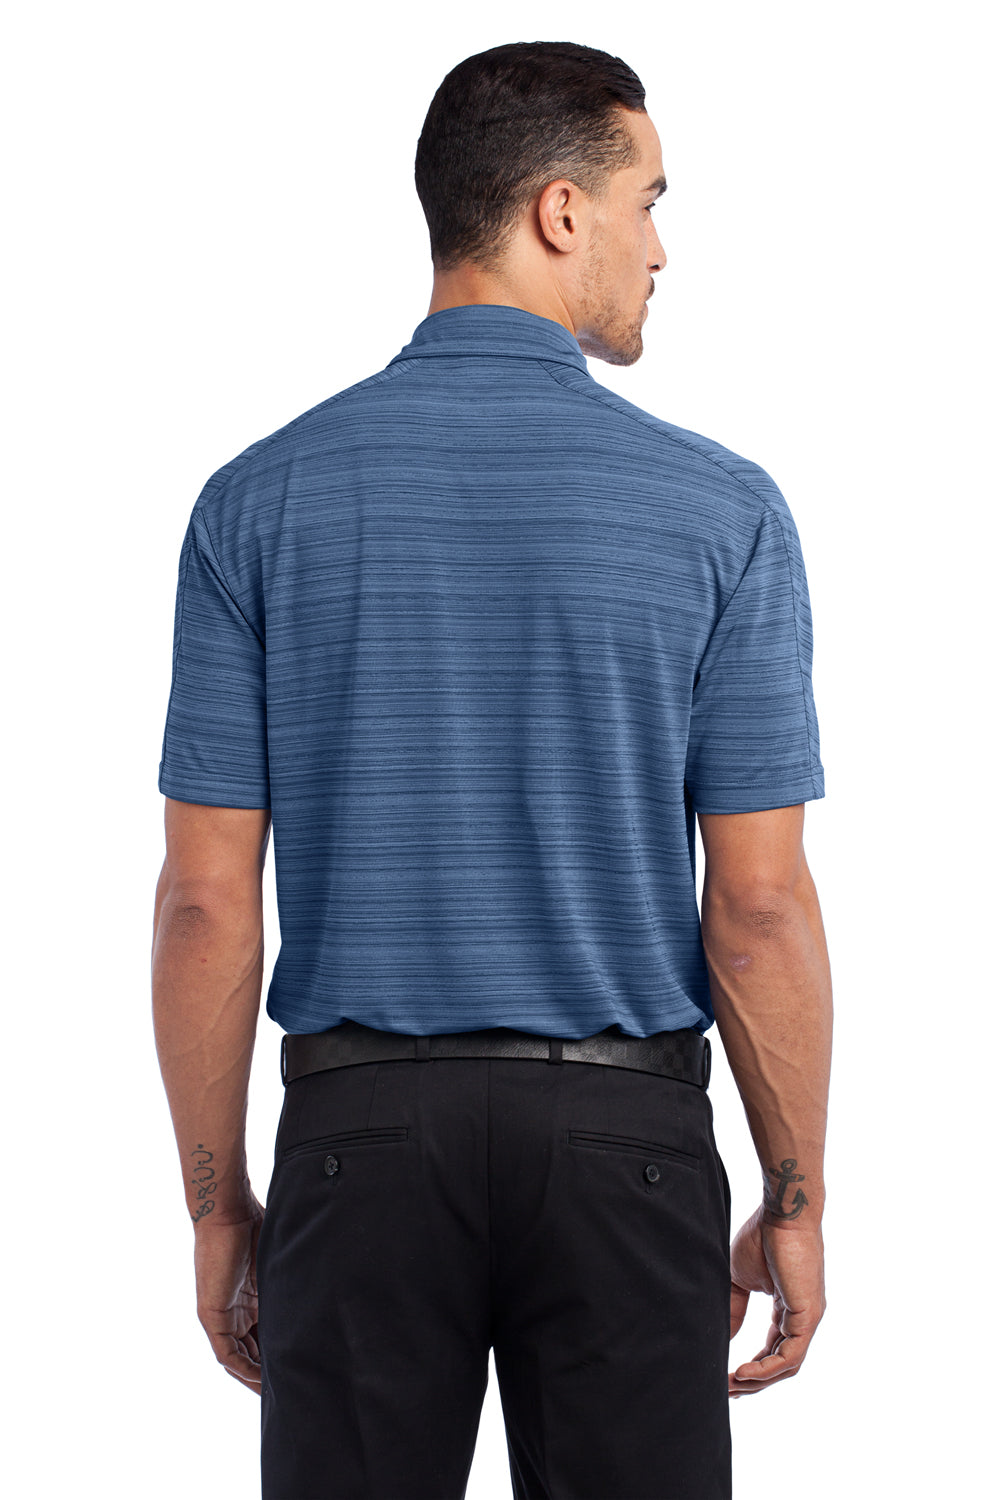 Ogio OG116 Mens Elixir Moisture Wicking Short Sleeve Polo Shirt Indigo Blue Back